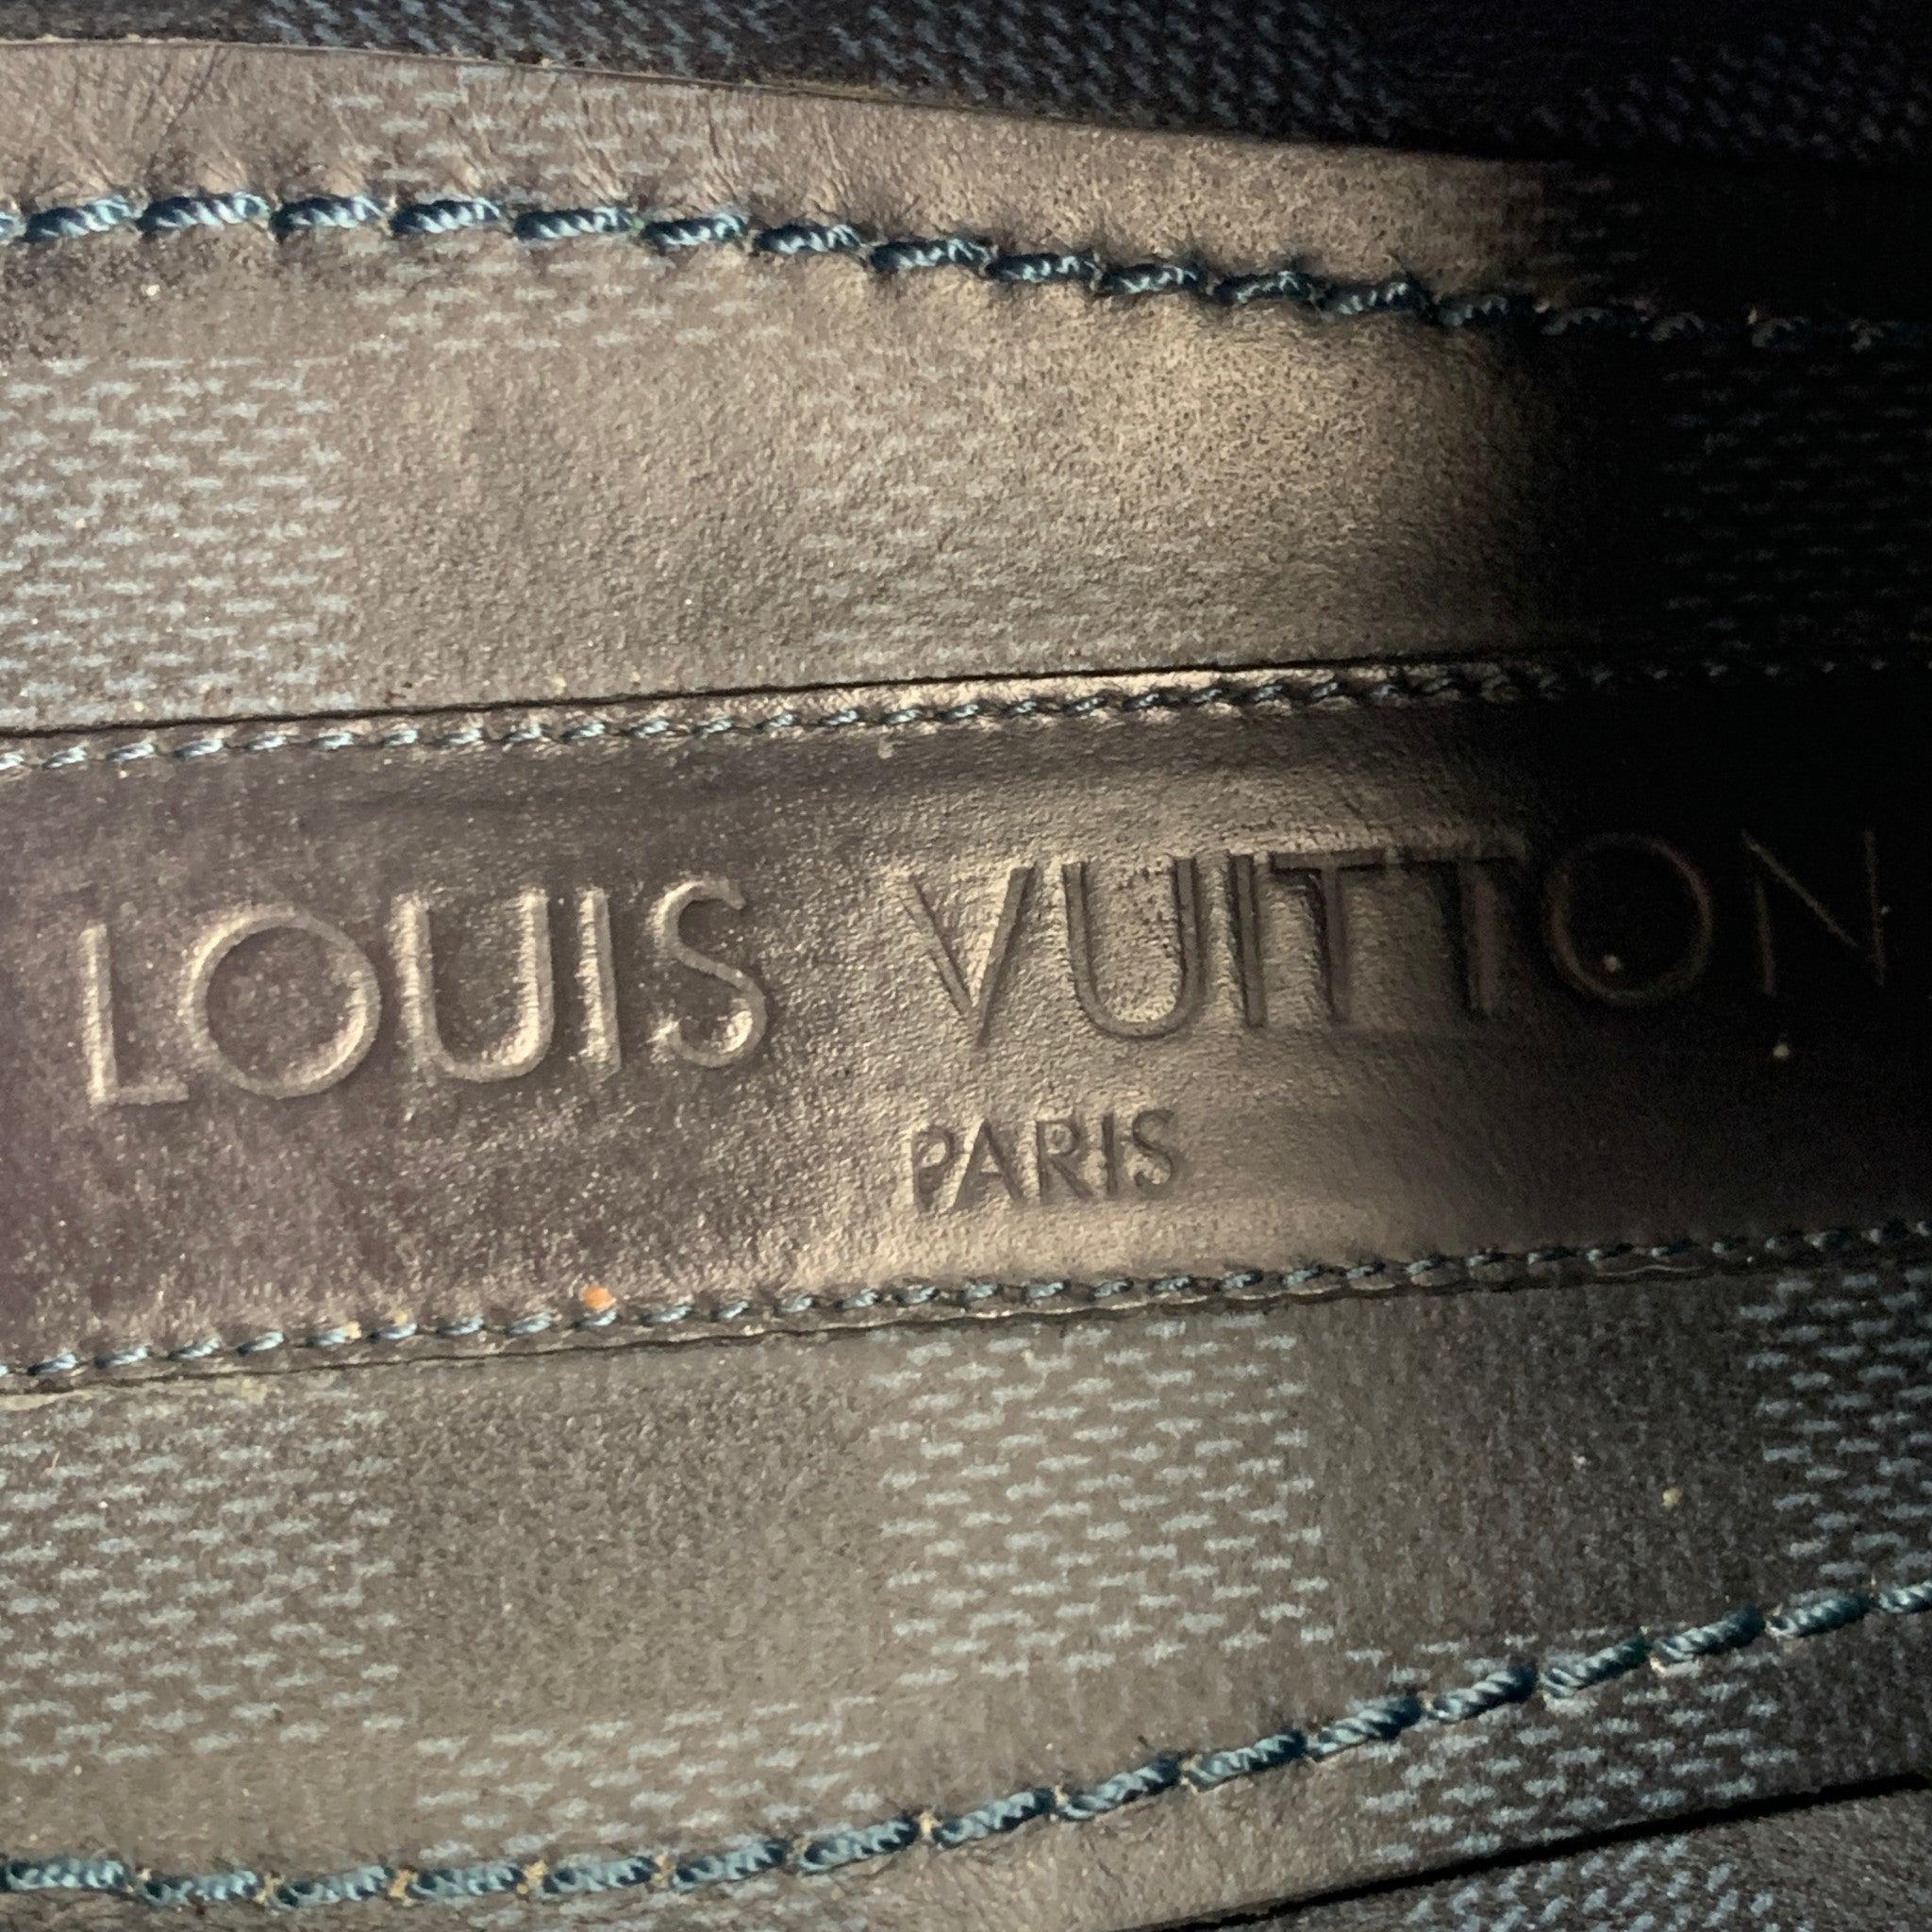 LOUIS VUITTON Size 10.5 Navy Blue Damier Leather Lace Up Shoes 3